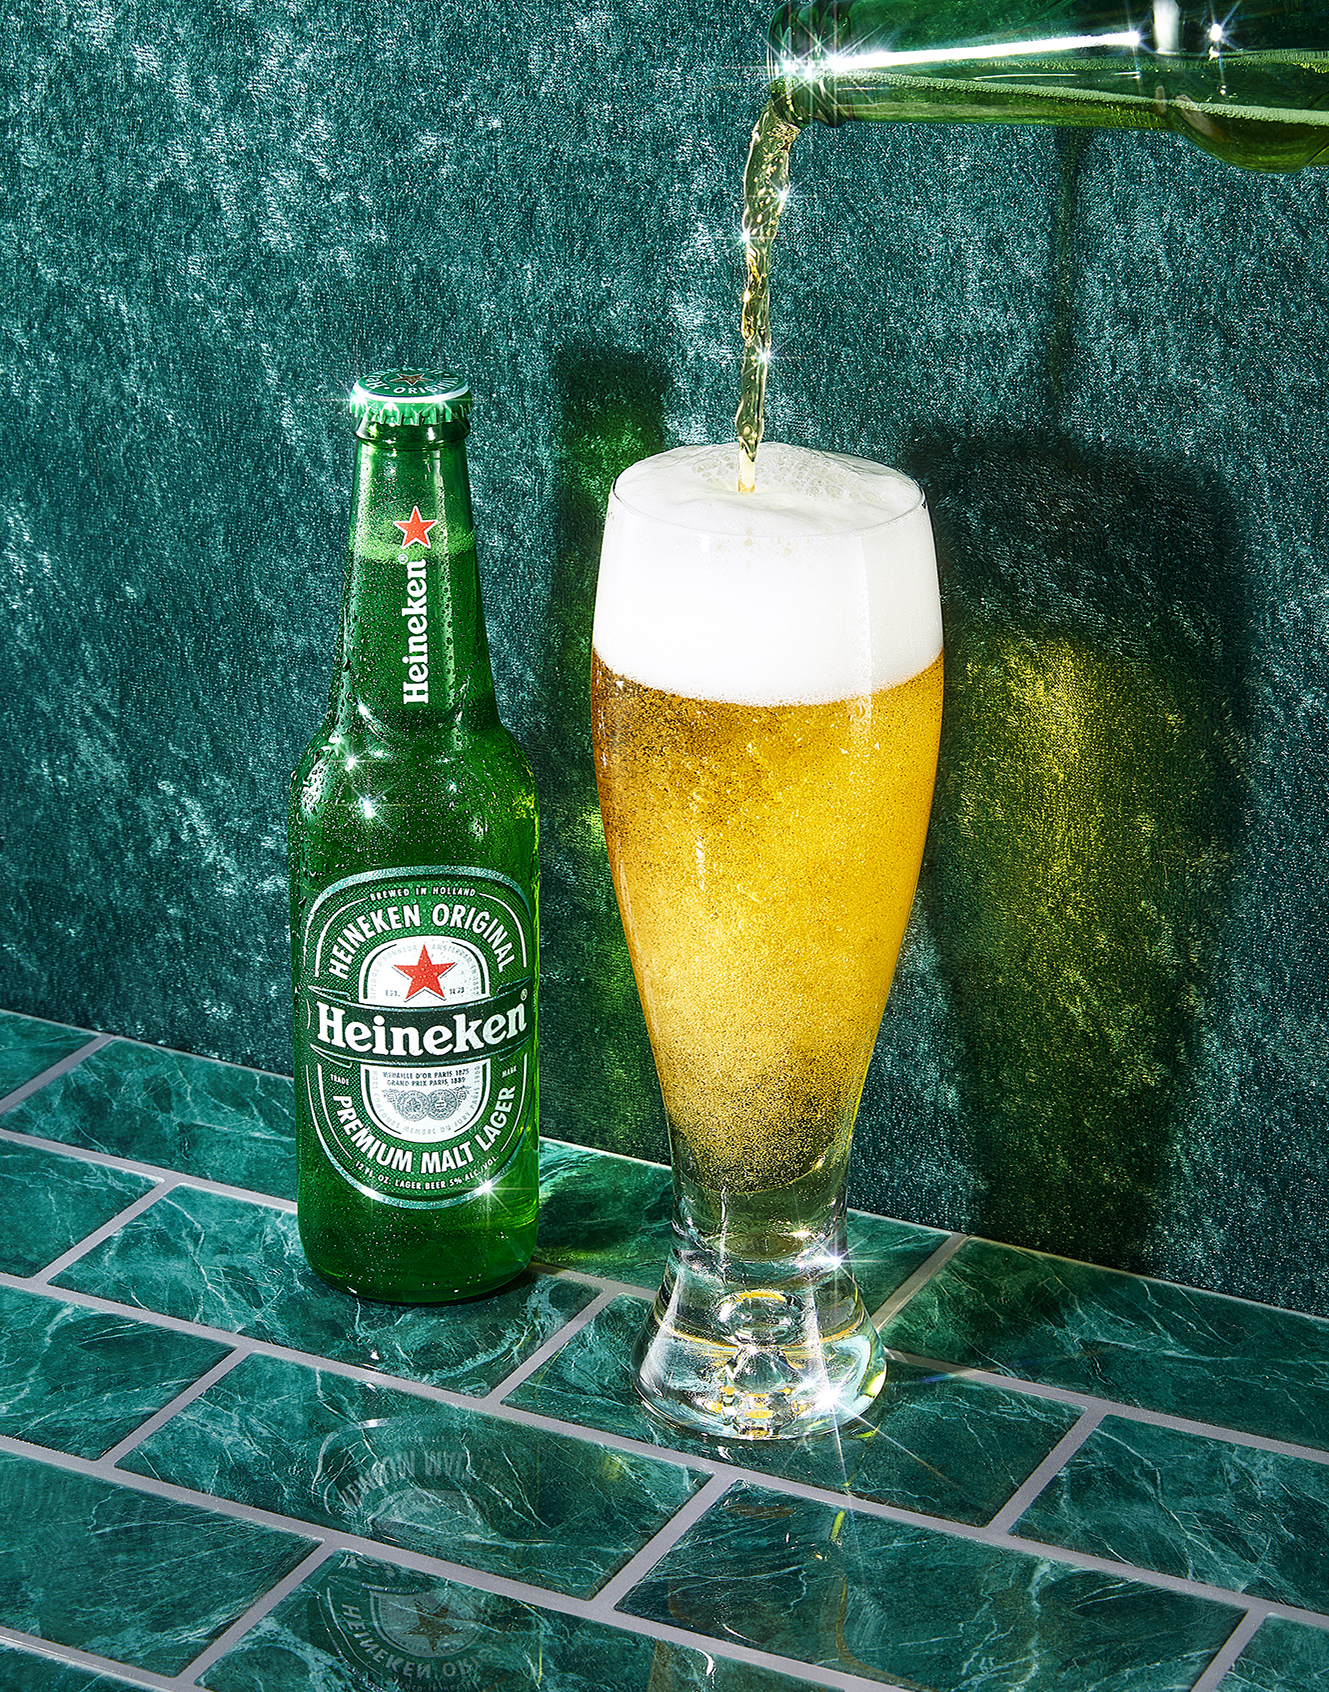 T2218_Beer_Test_Heineken_Pint_Glass_0361_Final_web